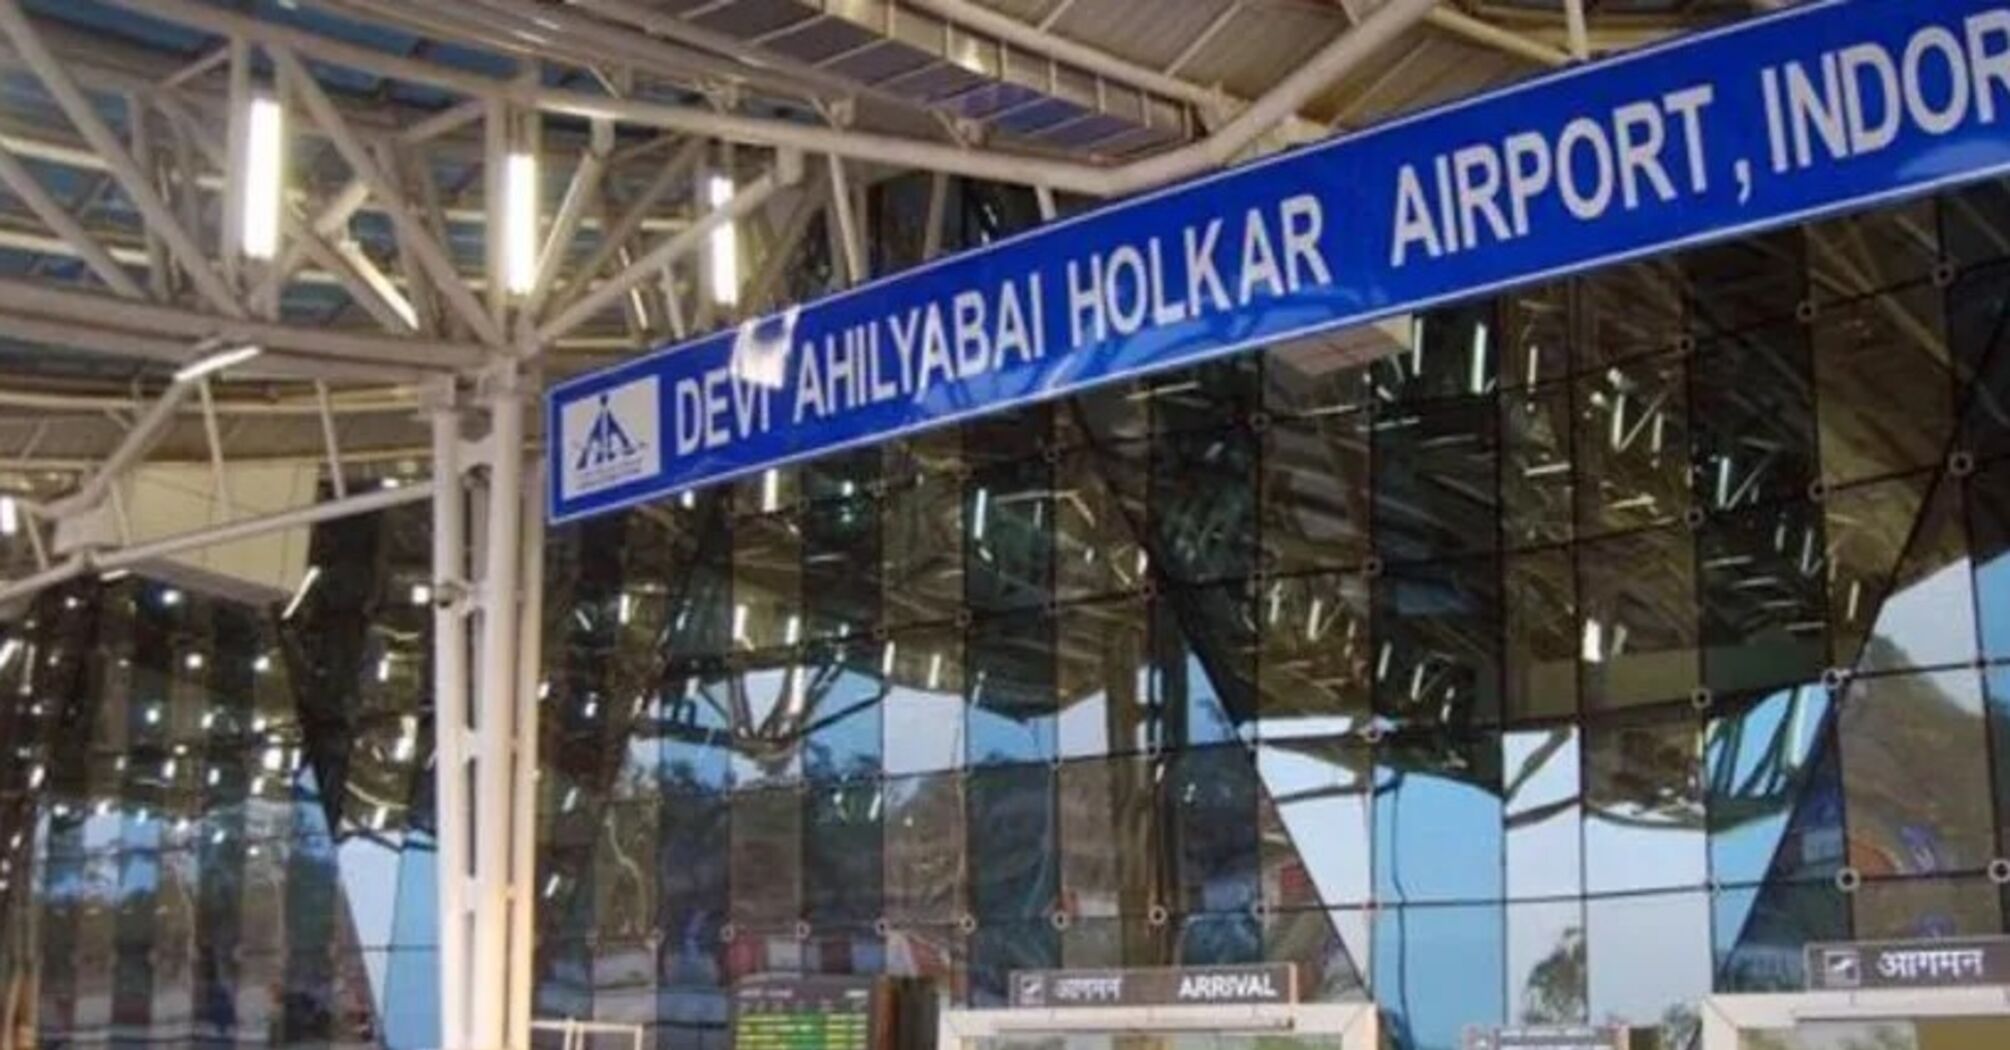 Международный аэропорт Дэви Ахилябай в Индоре начал принимать электронные визы